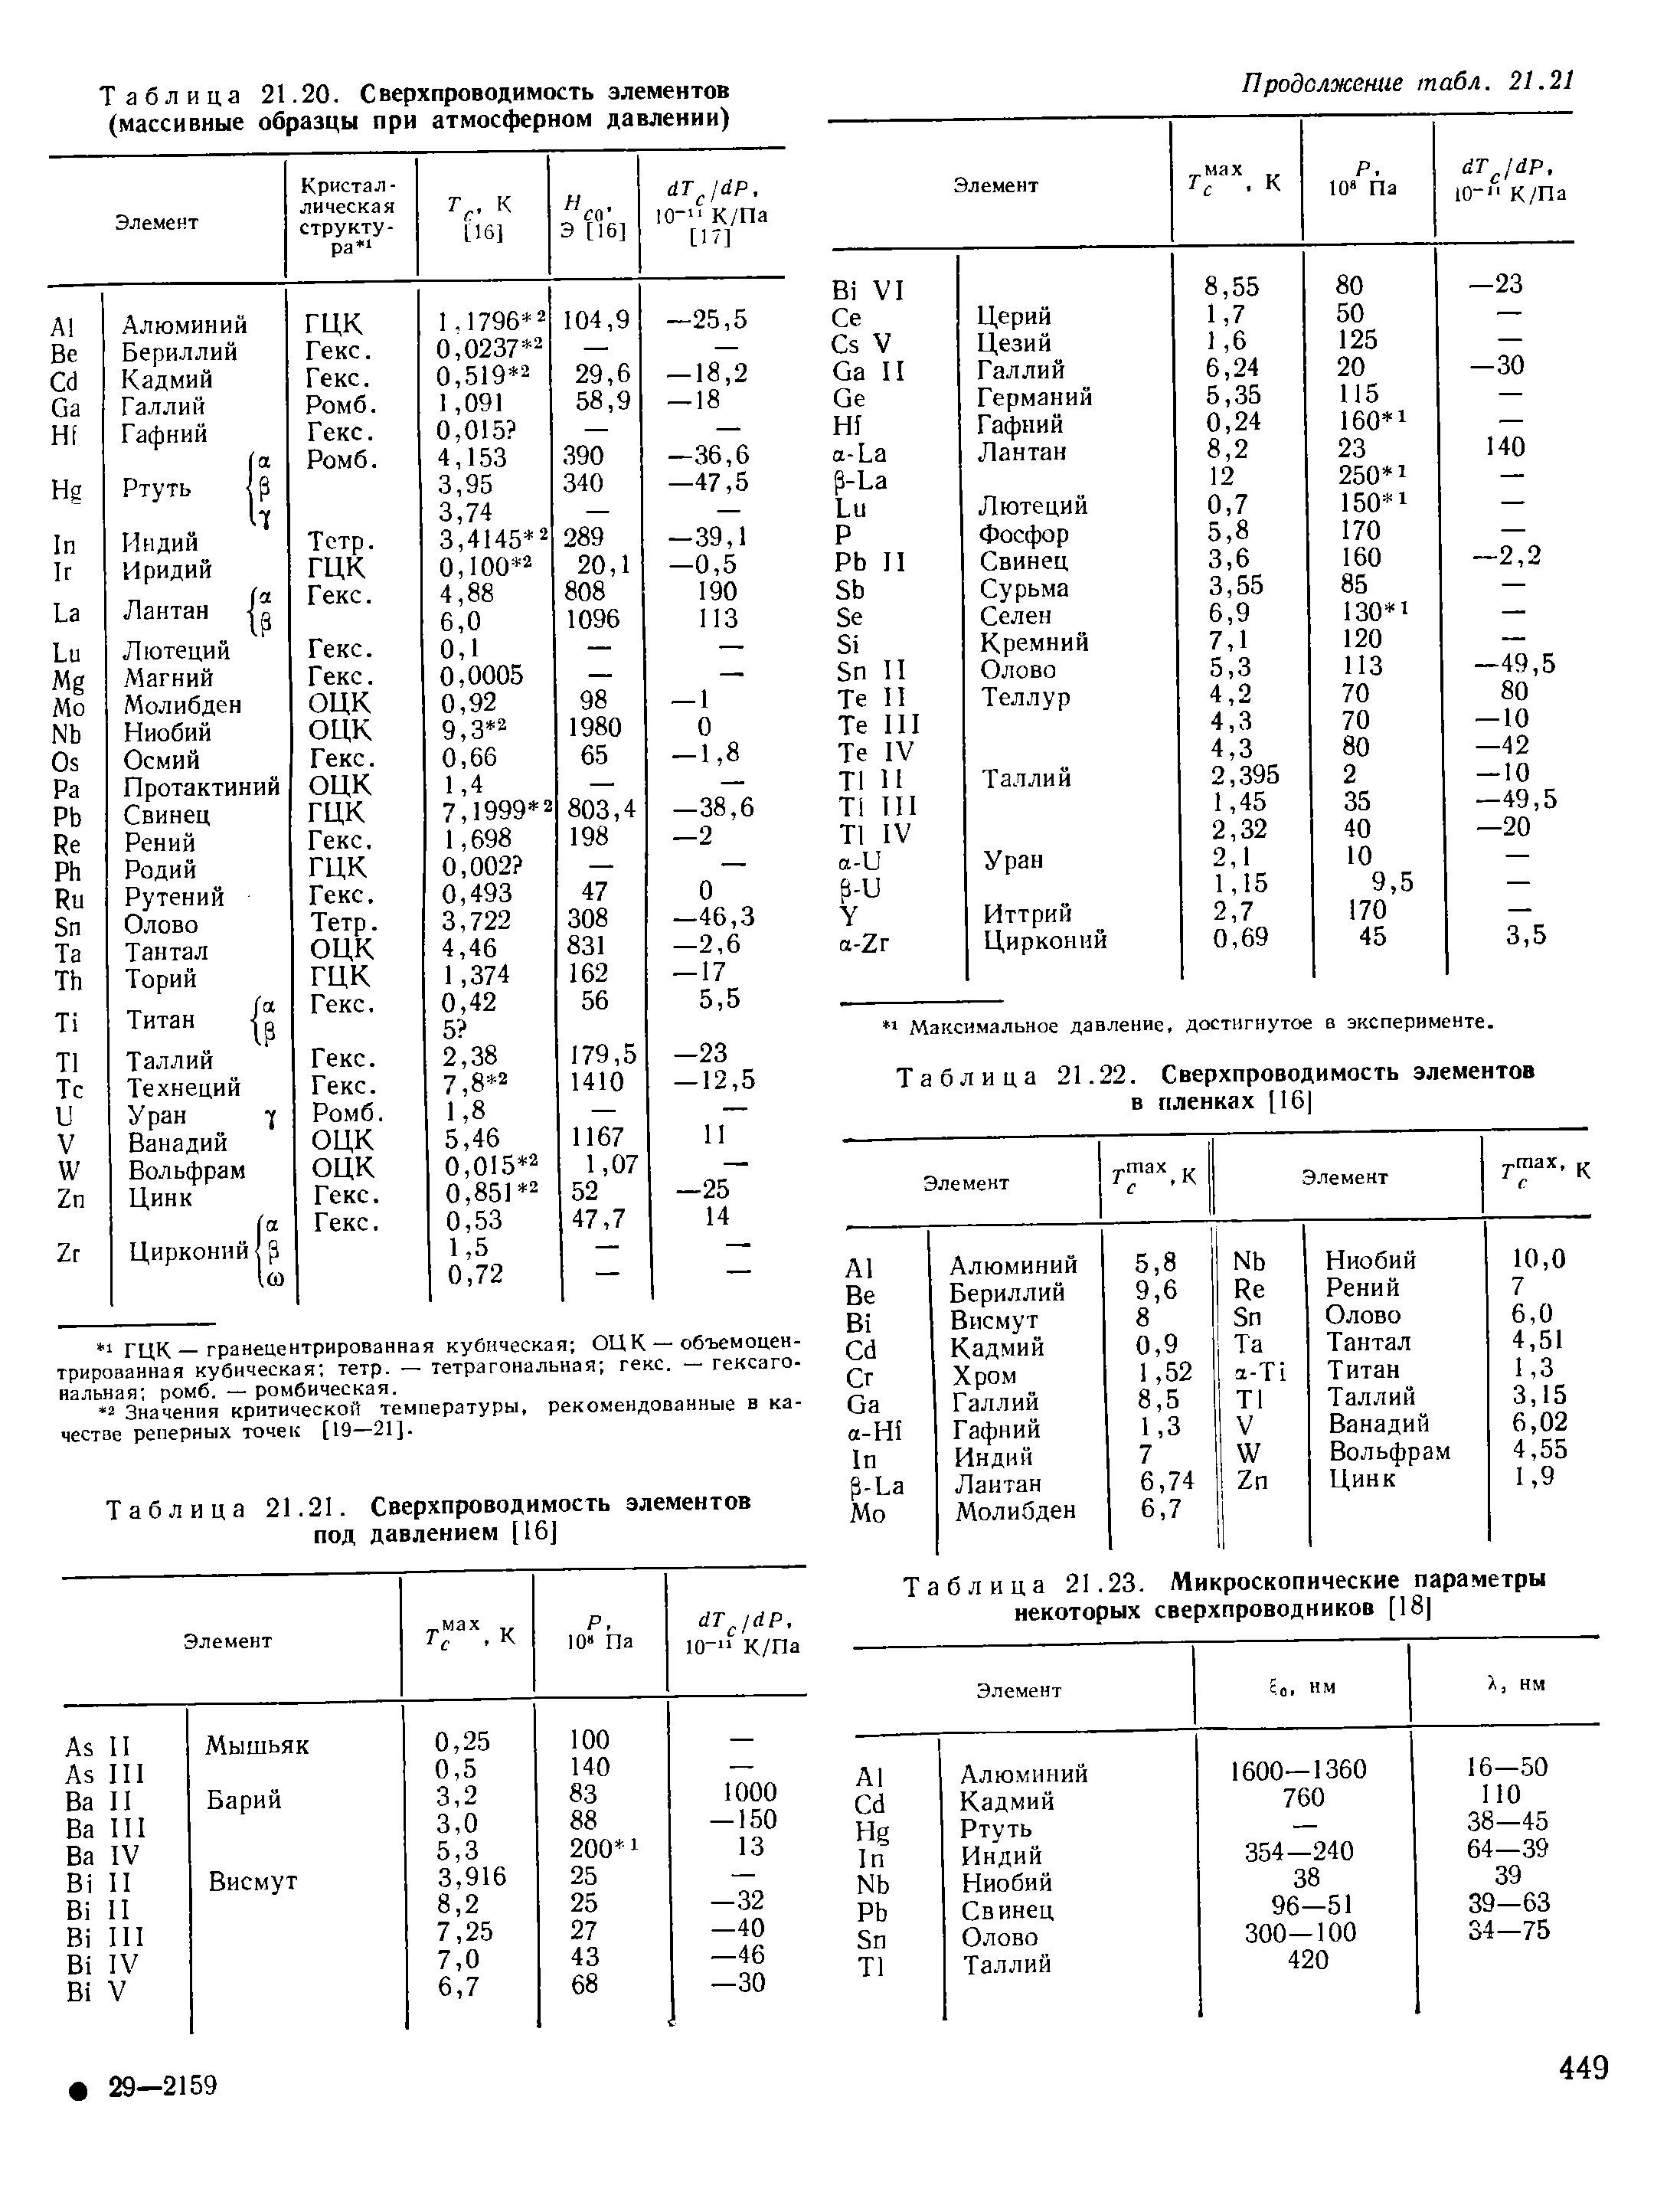 Таблица 21.21. Сверхпроводимость элементов под давлением [16]
